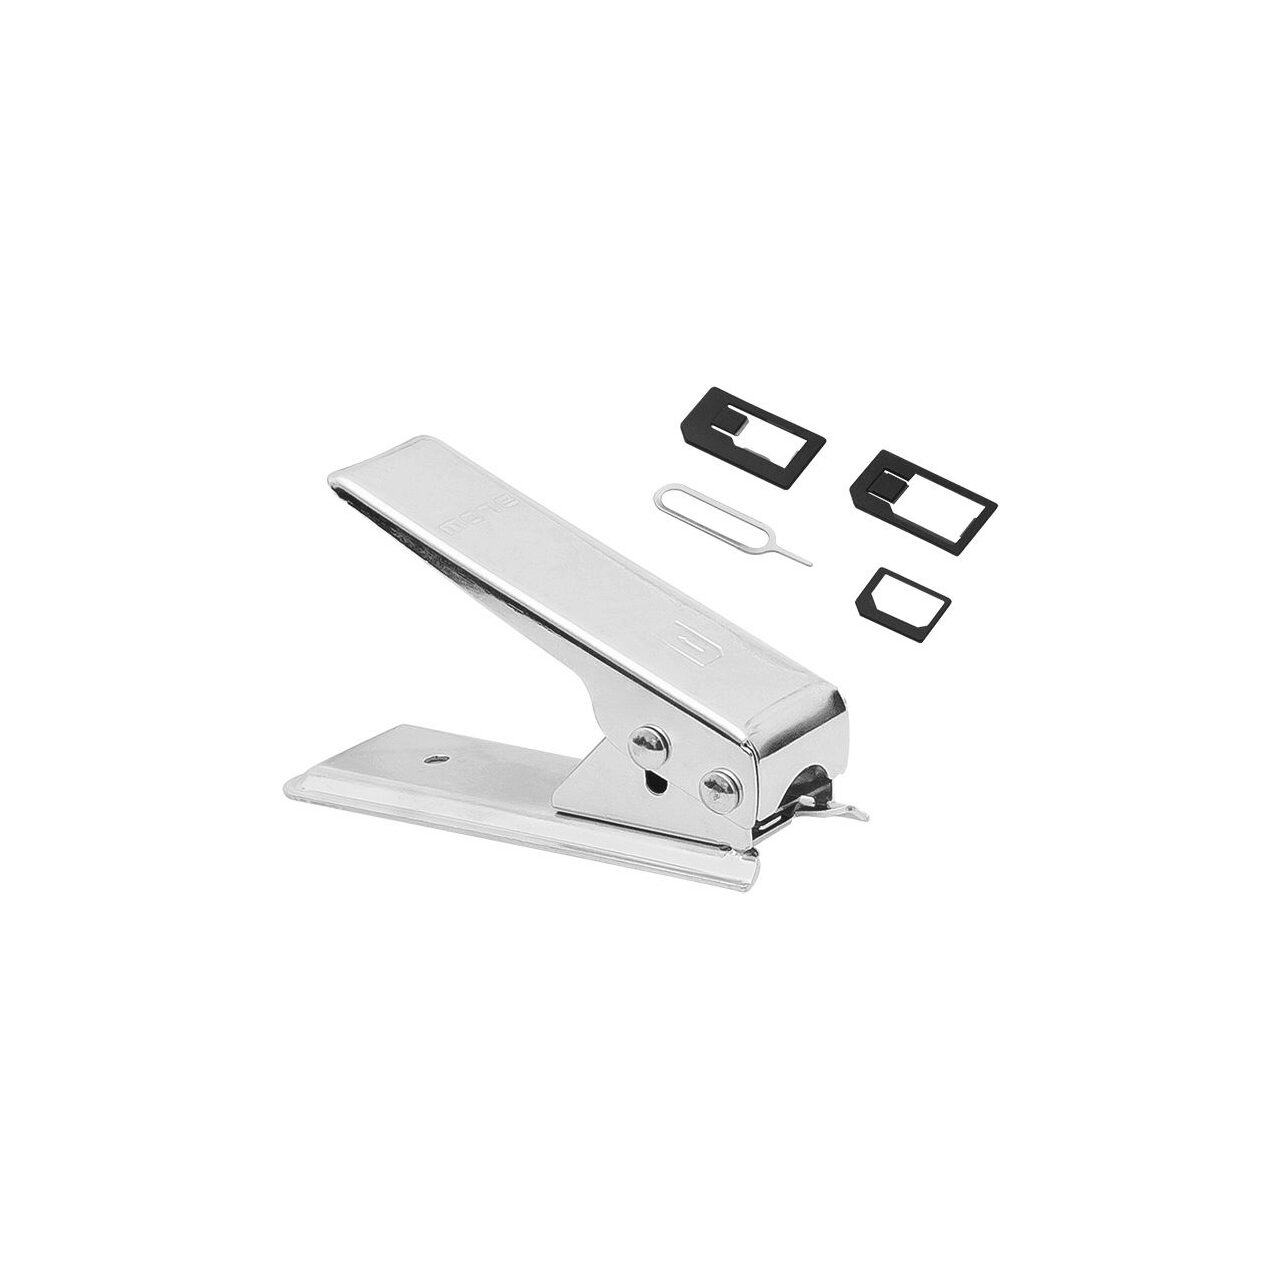 Alte gadgeturi - Accesoriu blow Cutter SIM - micro-SIM (5900804063414)